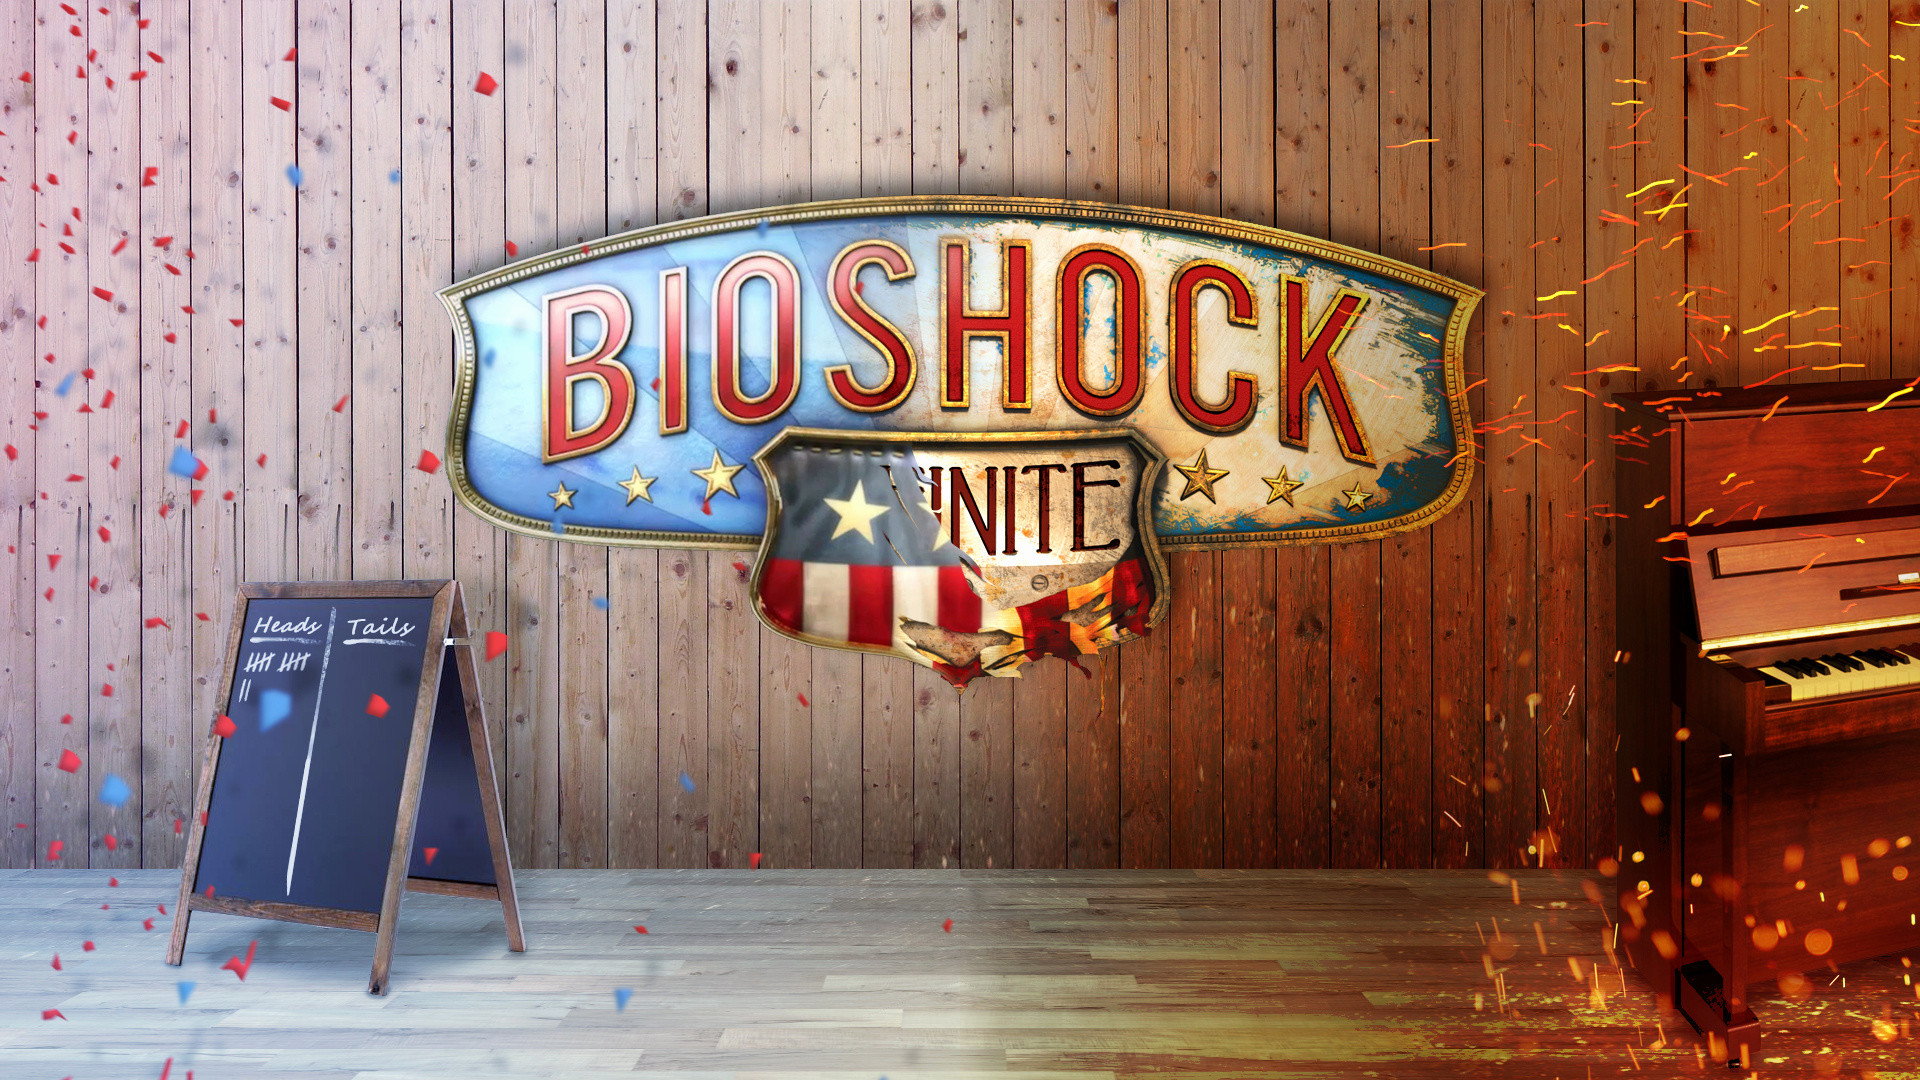 1920x1080, Pacman Live Wallpaper Fresh Bioshock Infinite - Bioshock Infinite Logo , HD Wallpaper & Backgrounds